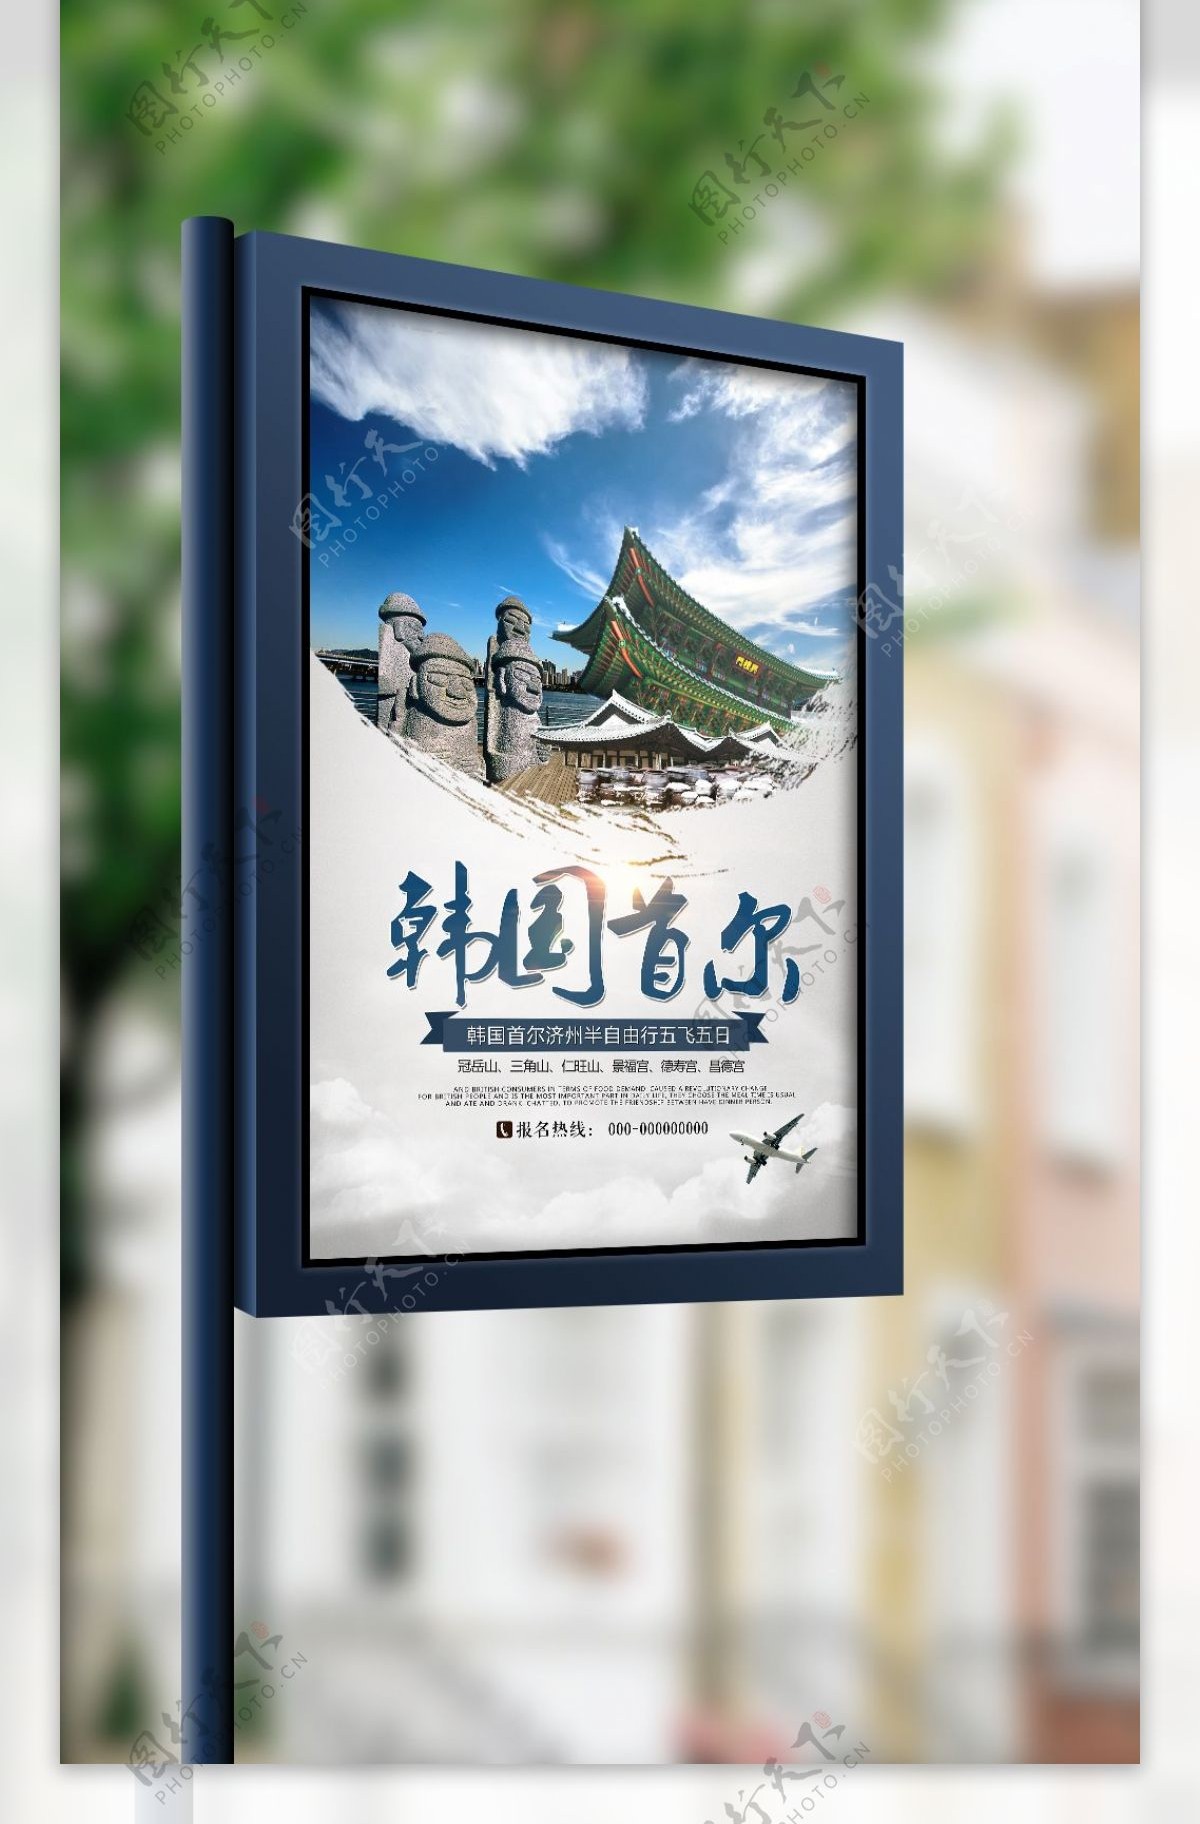 韩国首尔旅游海报